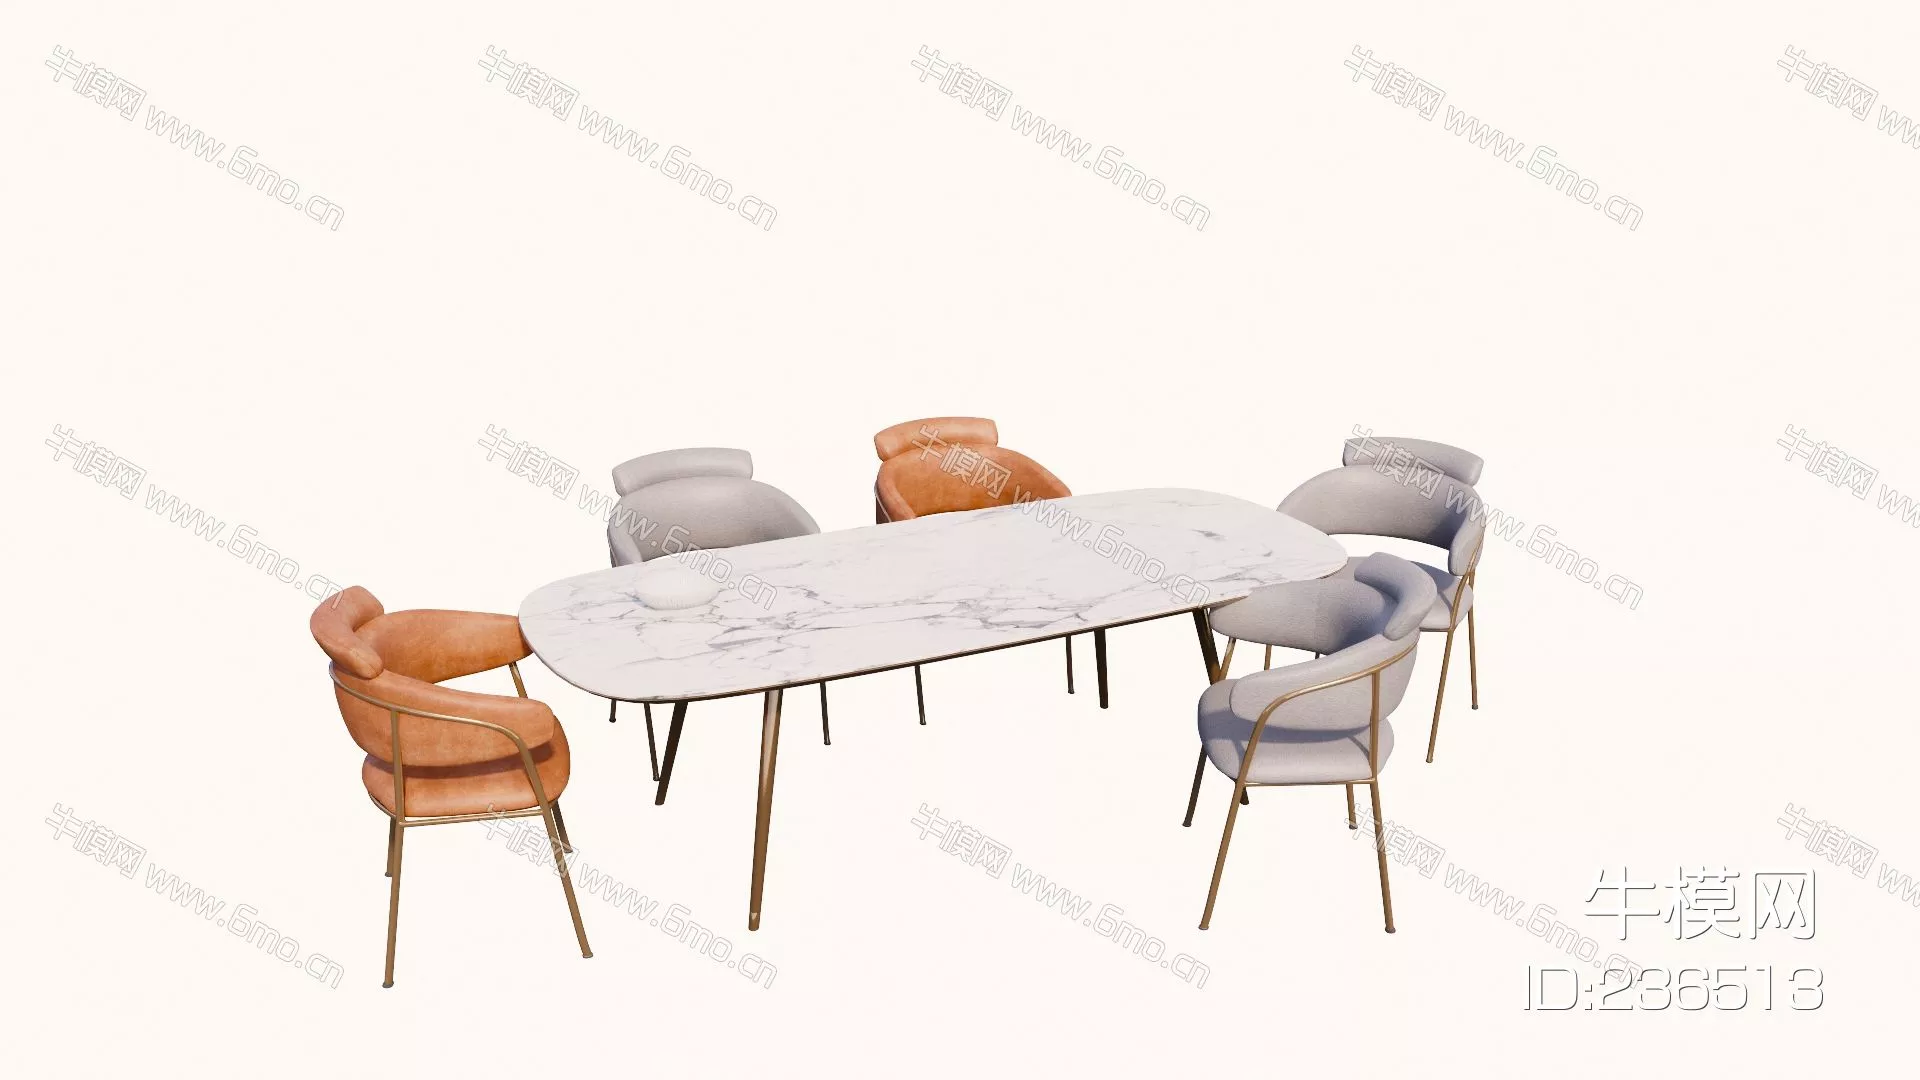 MODERN DINING TABLE SET - SKETCHUP 3D MODEL - ENSCAPE - 236513